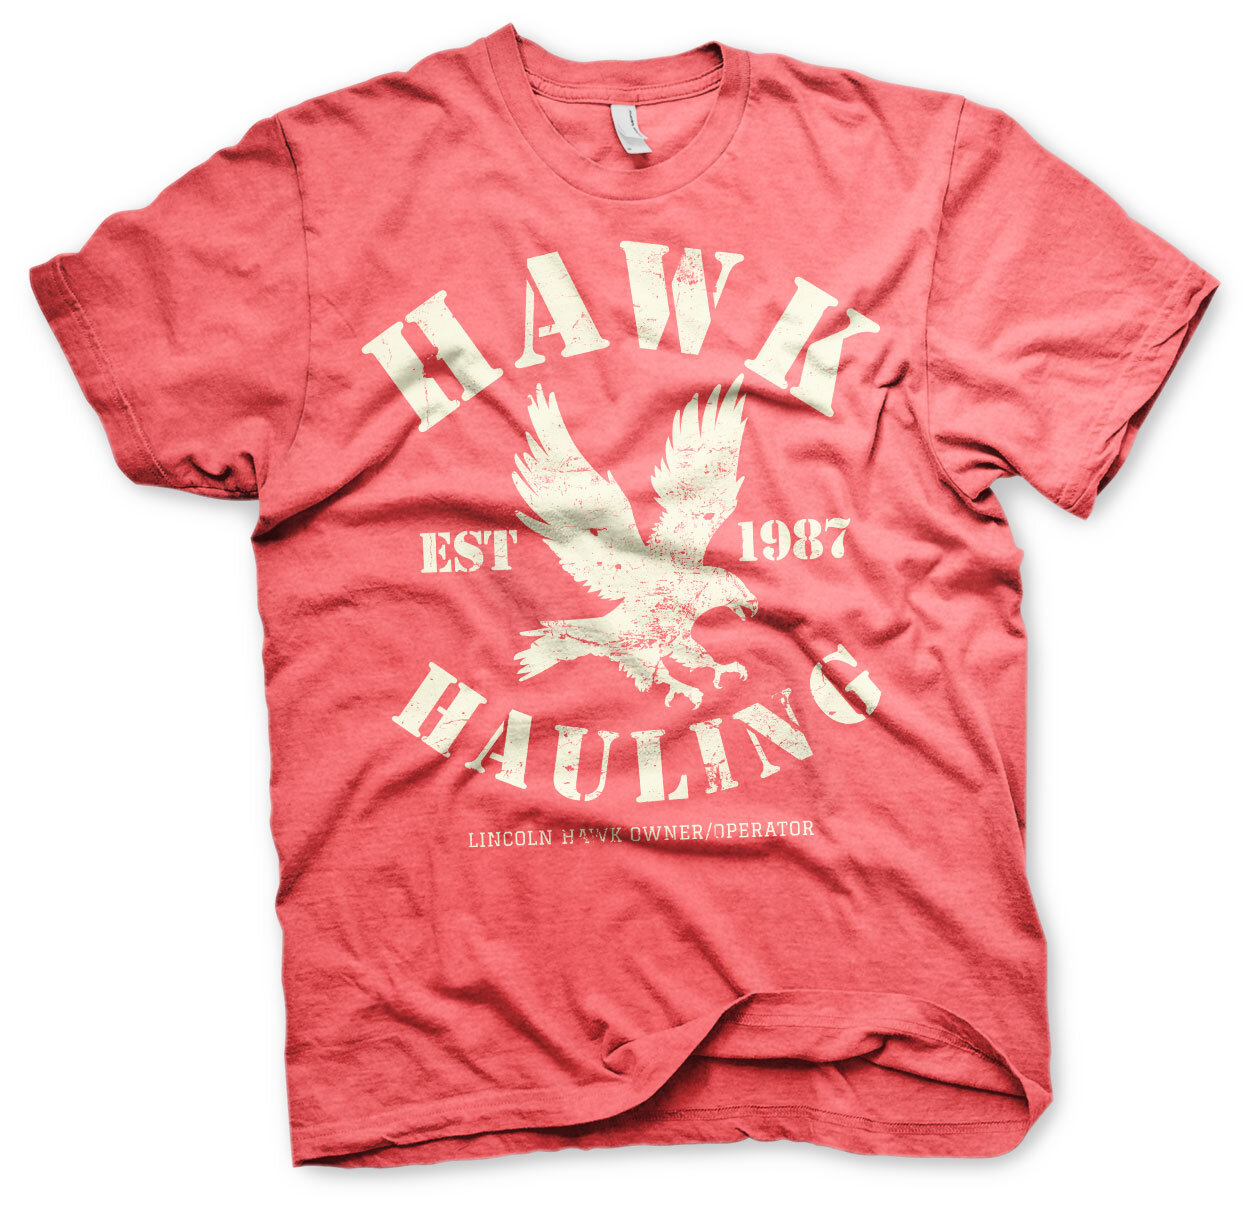 Hawk Hauling T-Shirt